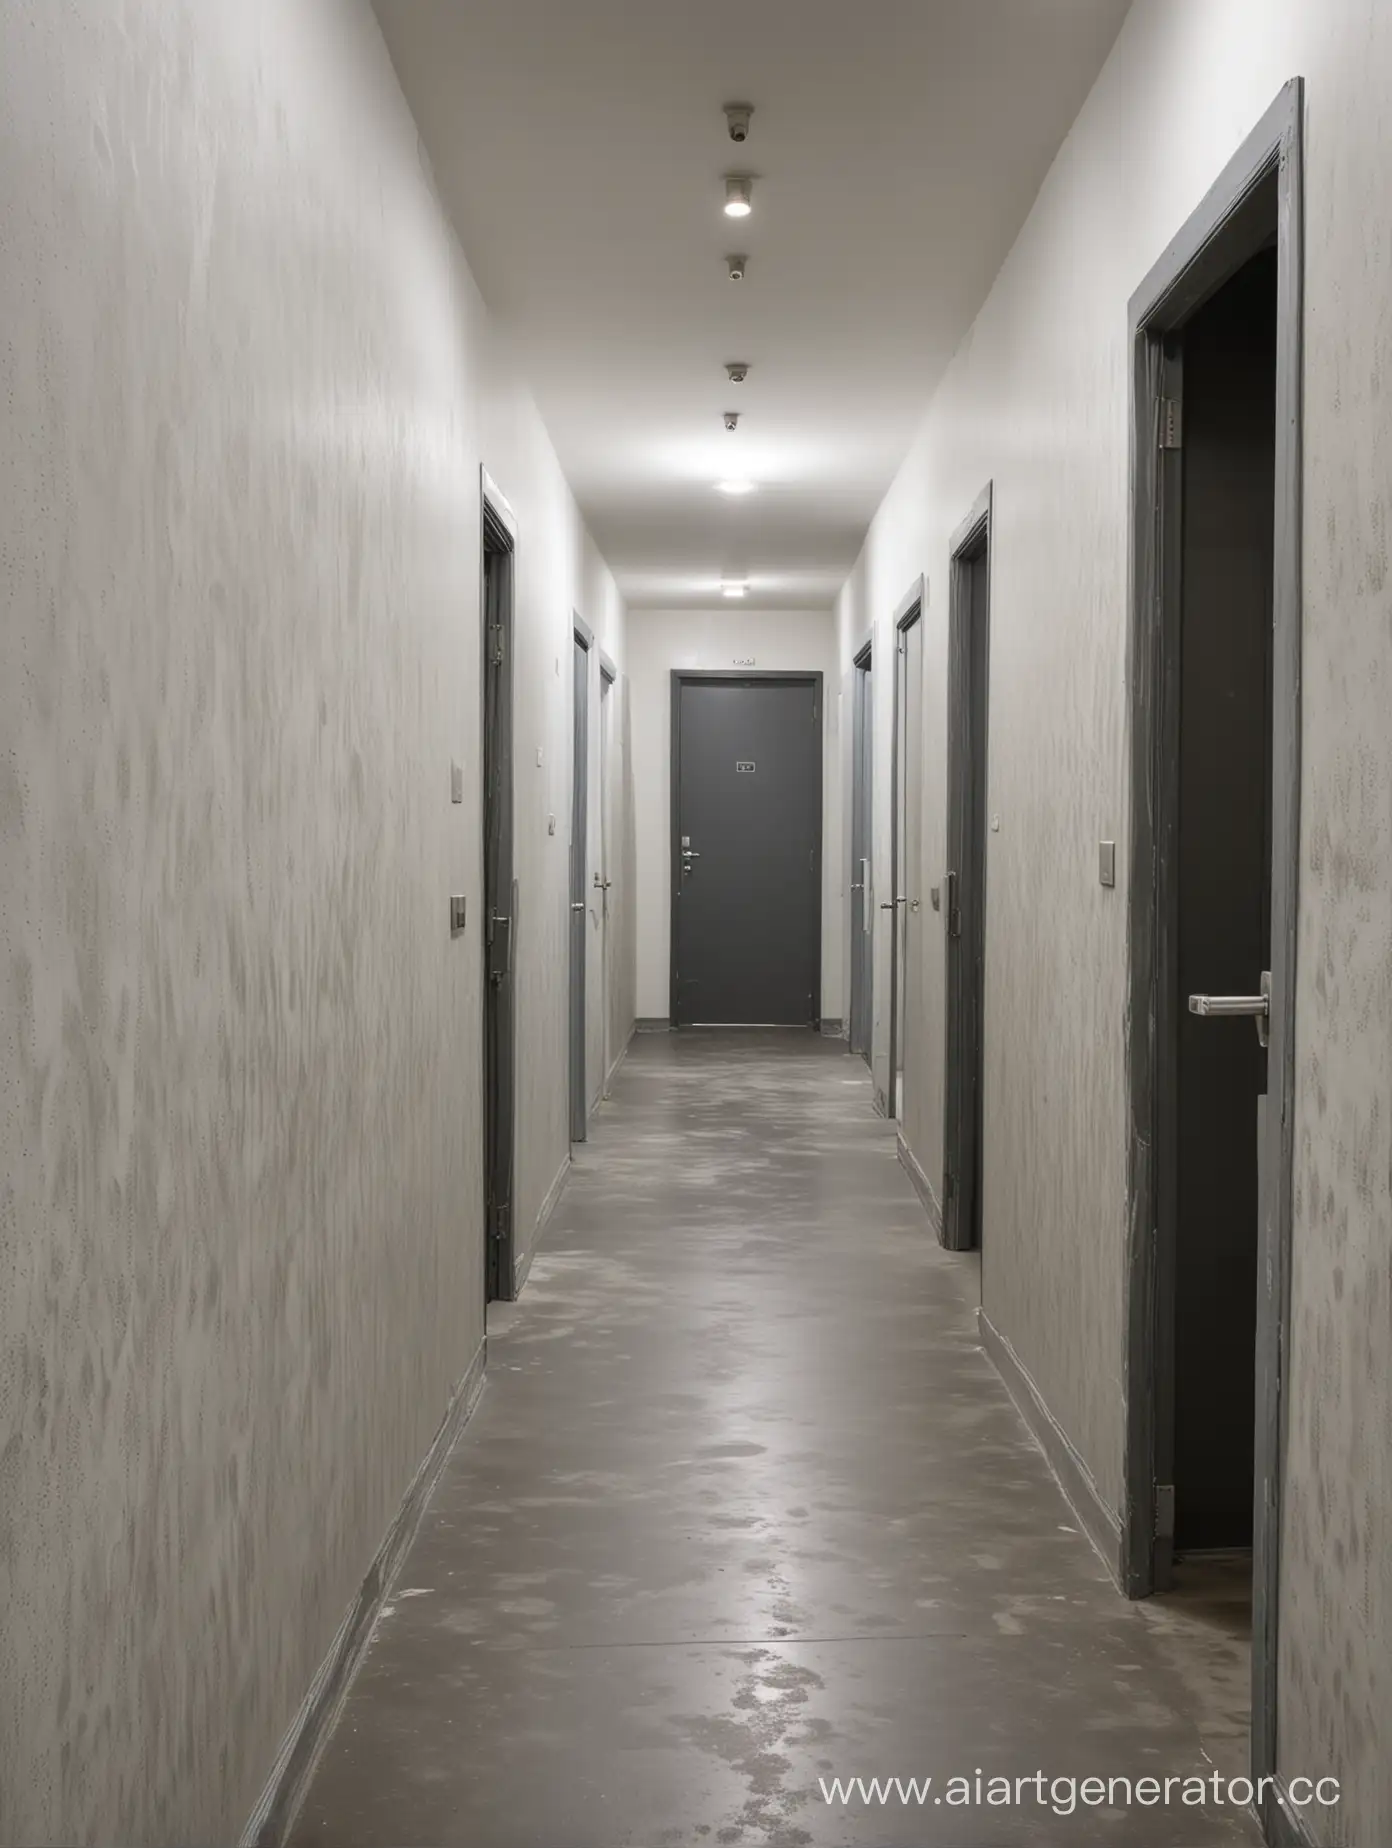 Фото коридора с Виниловыми обоями и с бетоным полом, на стенах коридара расположены двери, случайно открывающеяся и закрывающеяся, что ведут в различные комноты и другие коридоры.